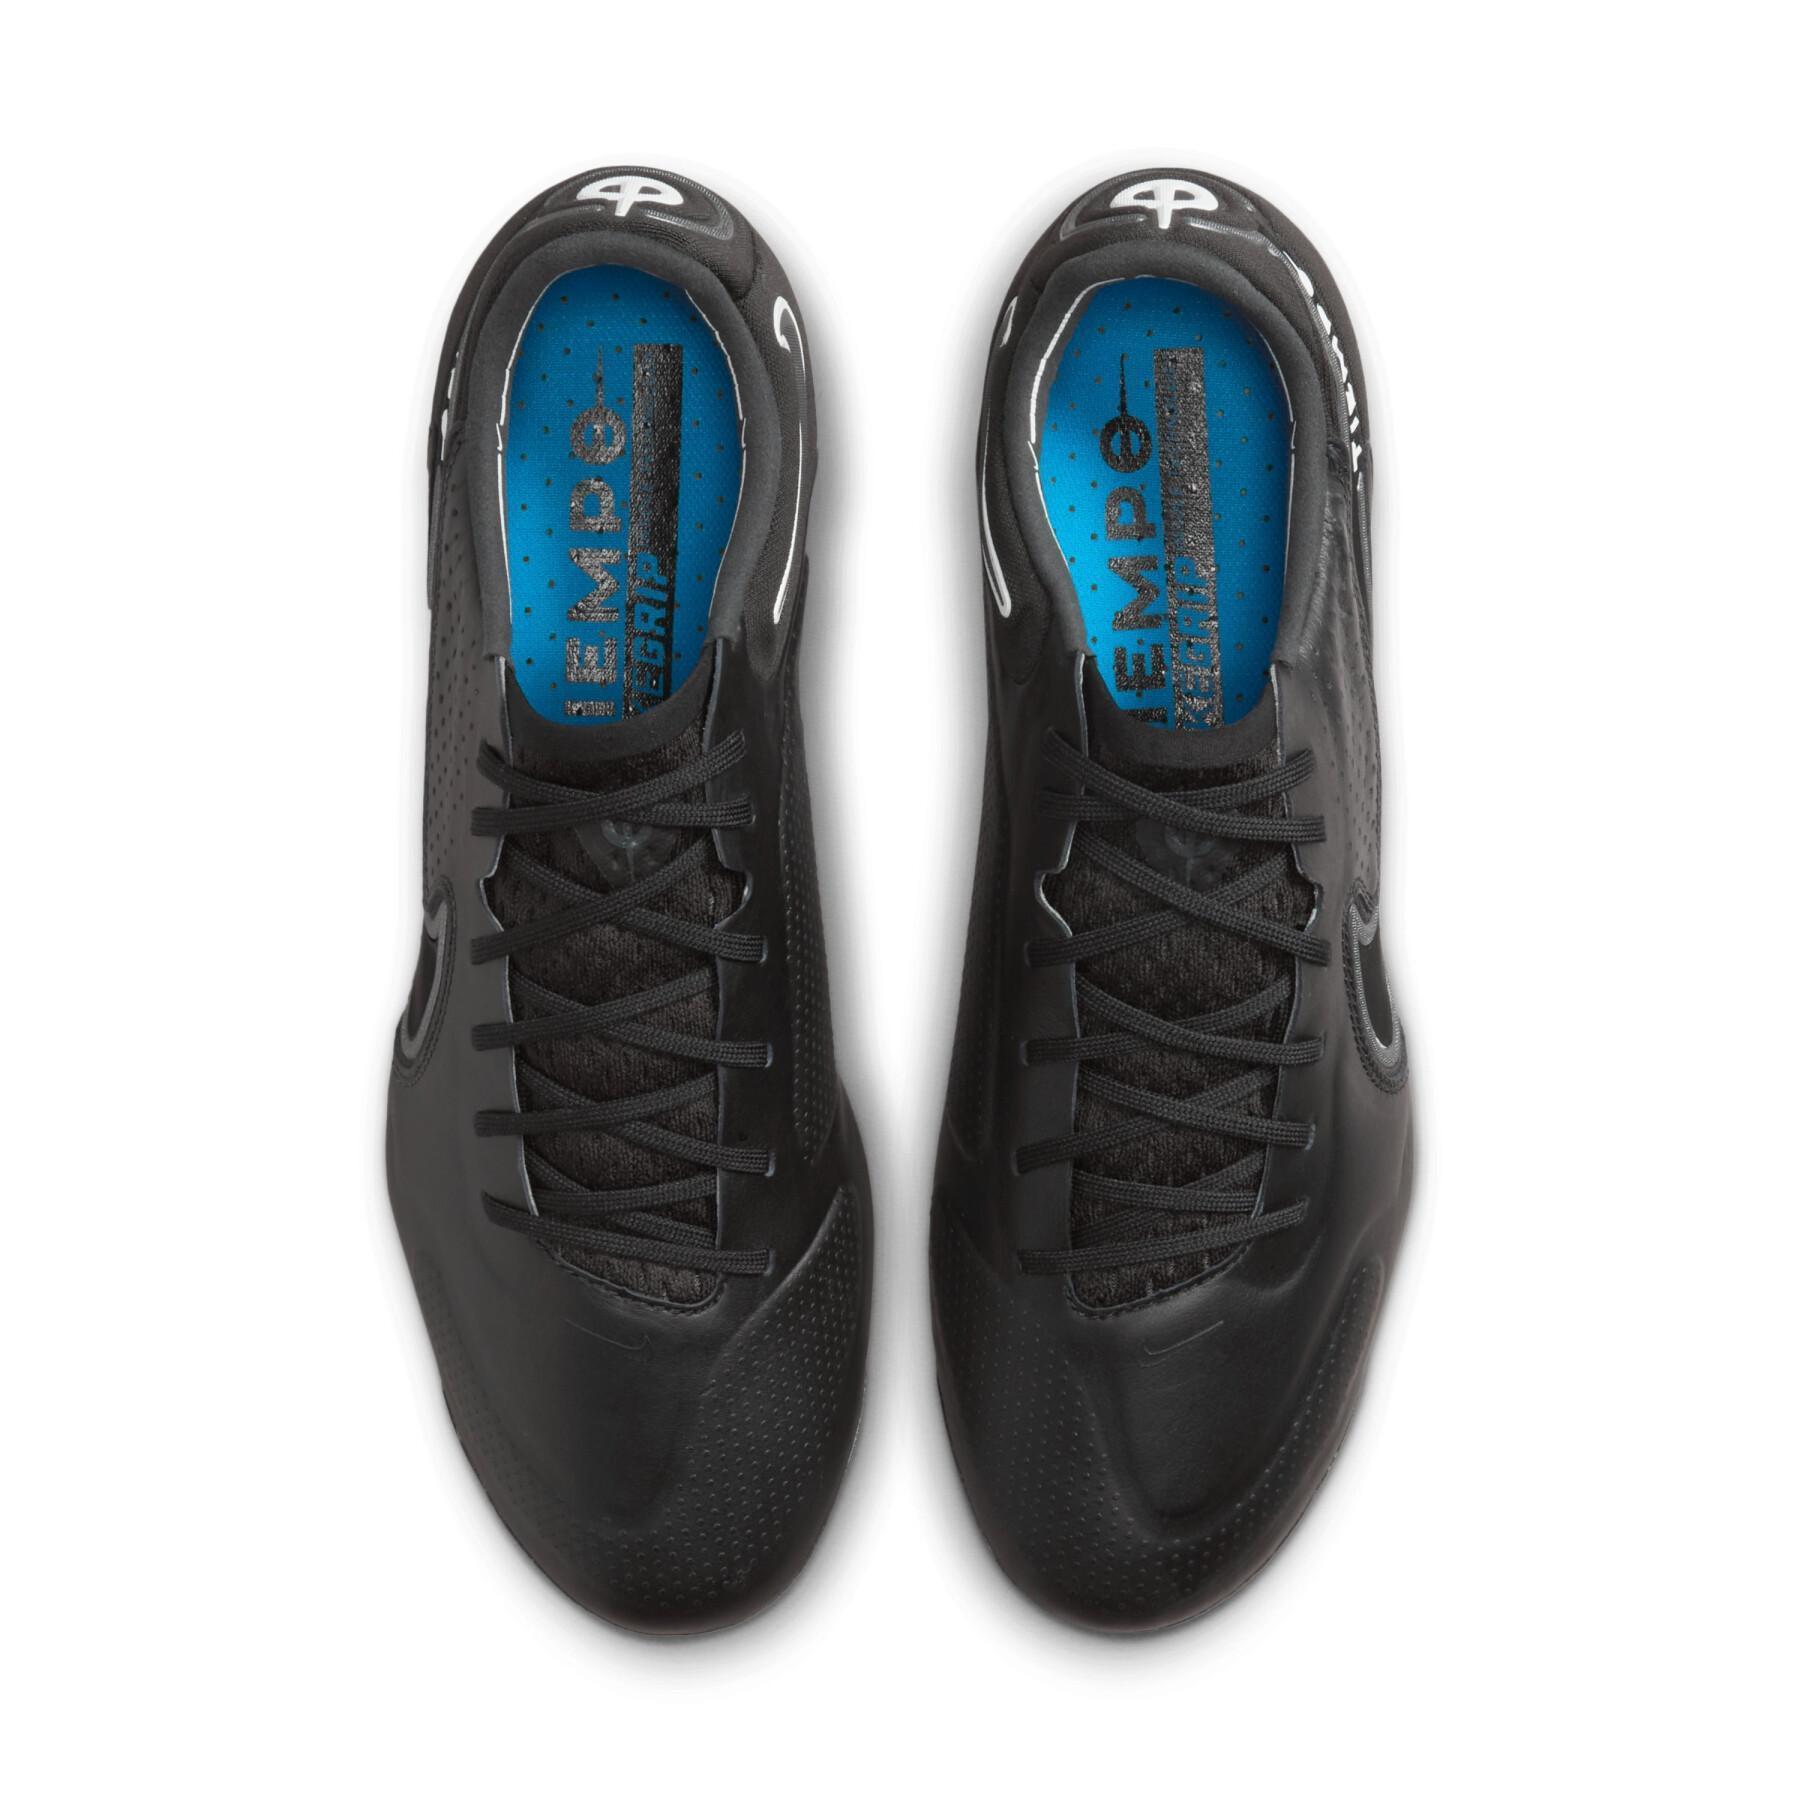 Sapatos de futebol Nike Tiempo Legend 9 Elite FG - Shadow Black Pack